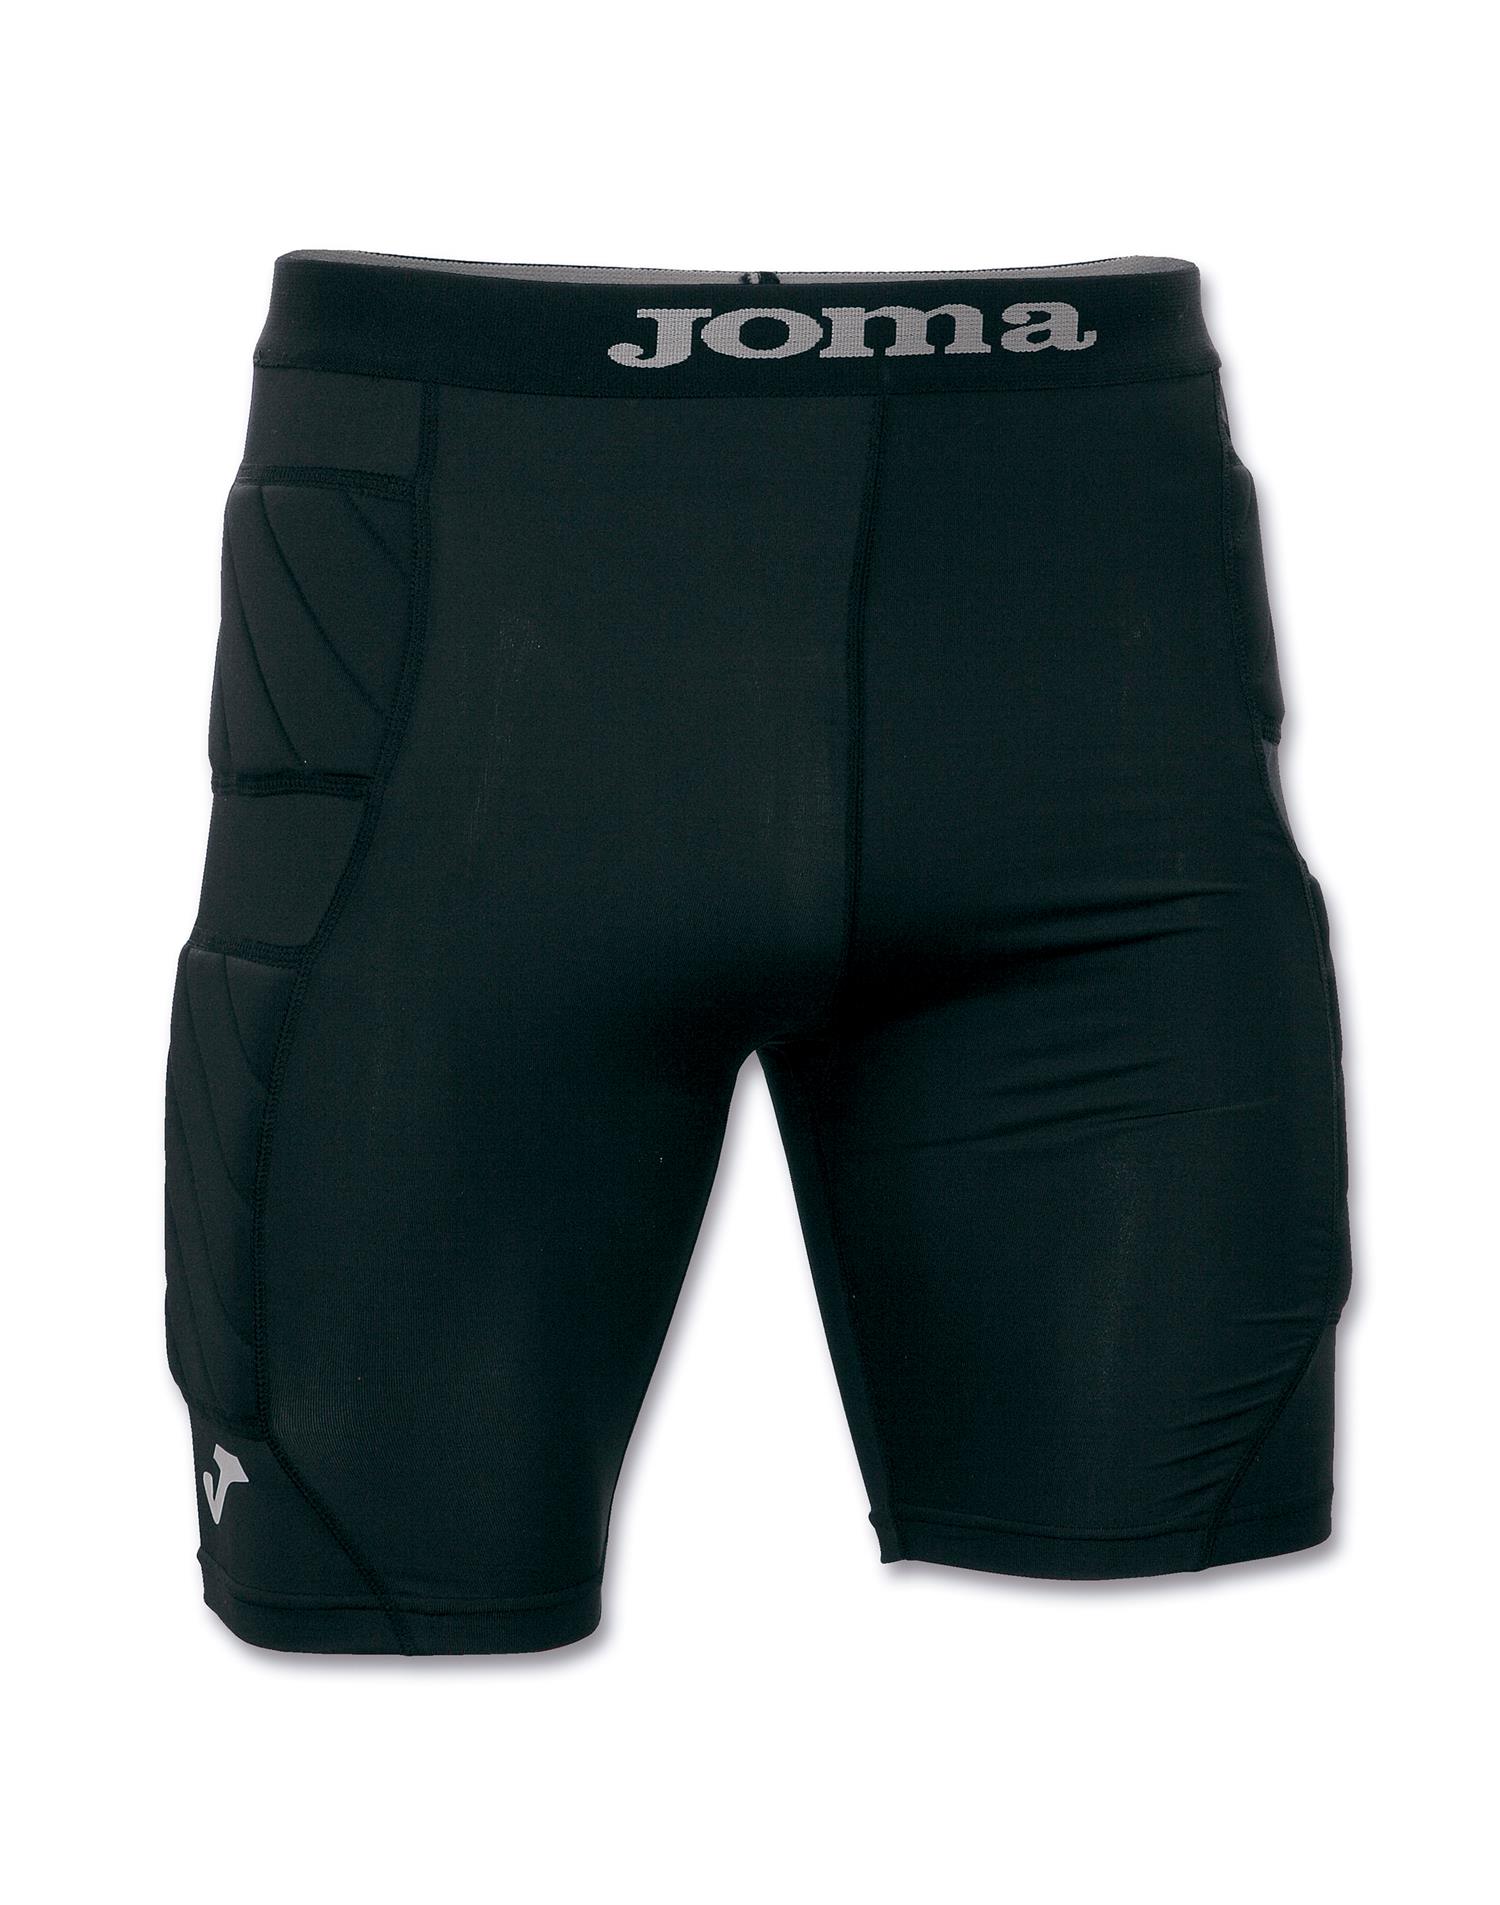 JOMA Pantalone portiere protec short (S-M - NERO)